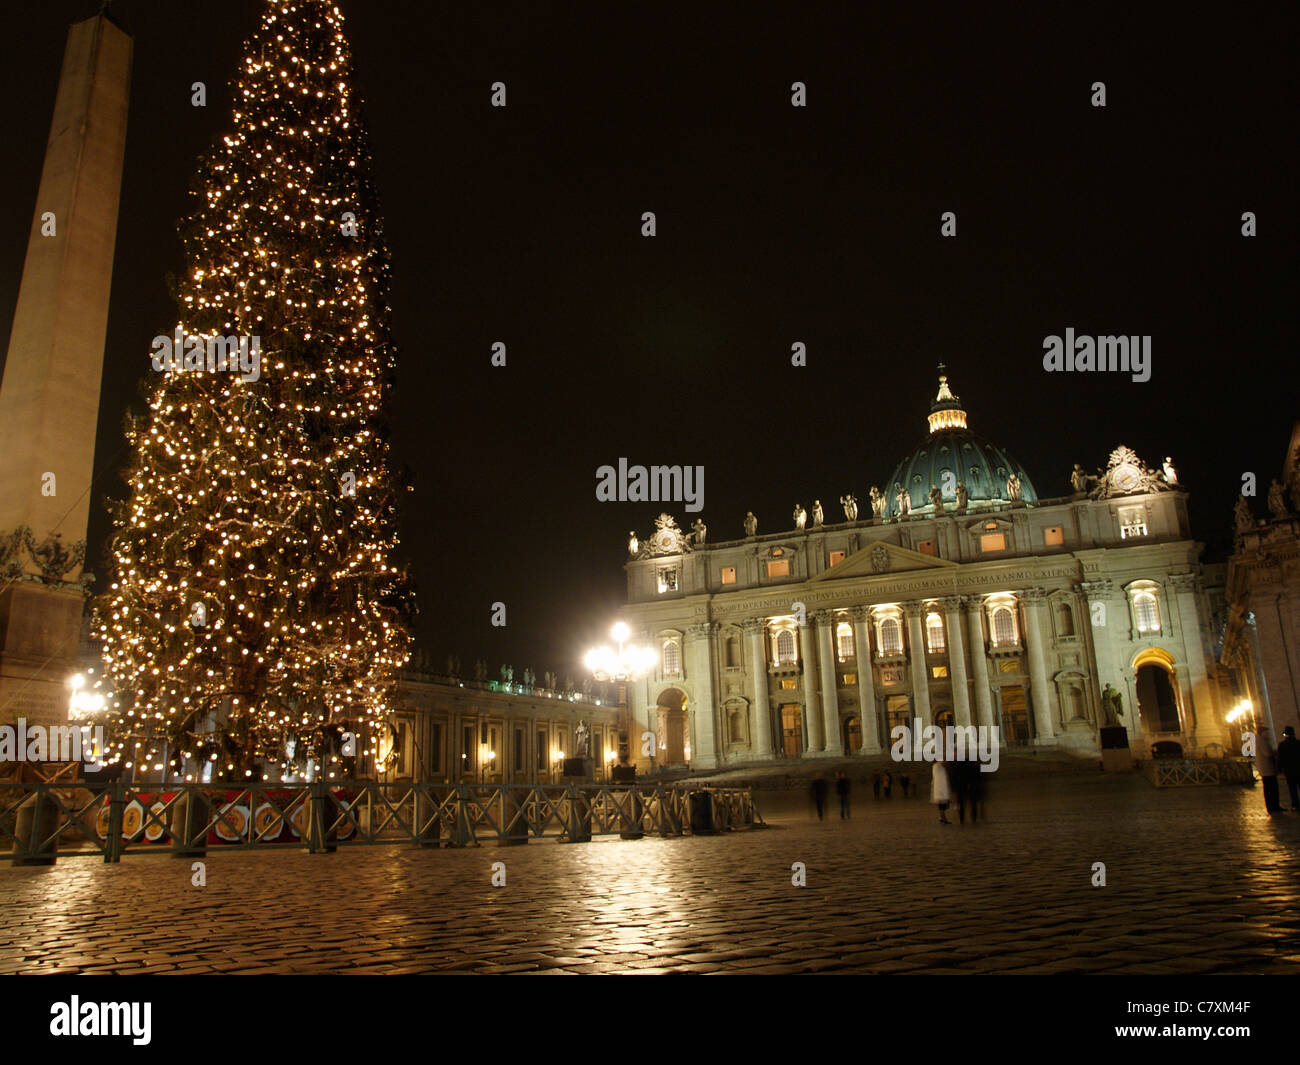 Photo de nuit de la Basilique Saint Pierre du Vatican avec d'immenses arbres de Noël éclairé, Rome, Latium, Italie Banque D'Images